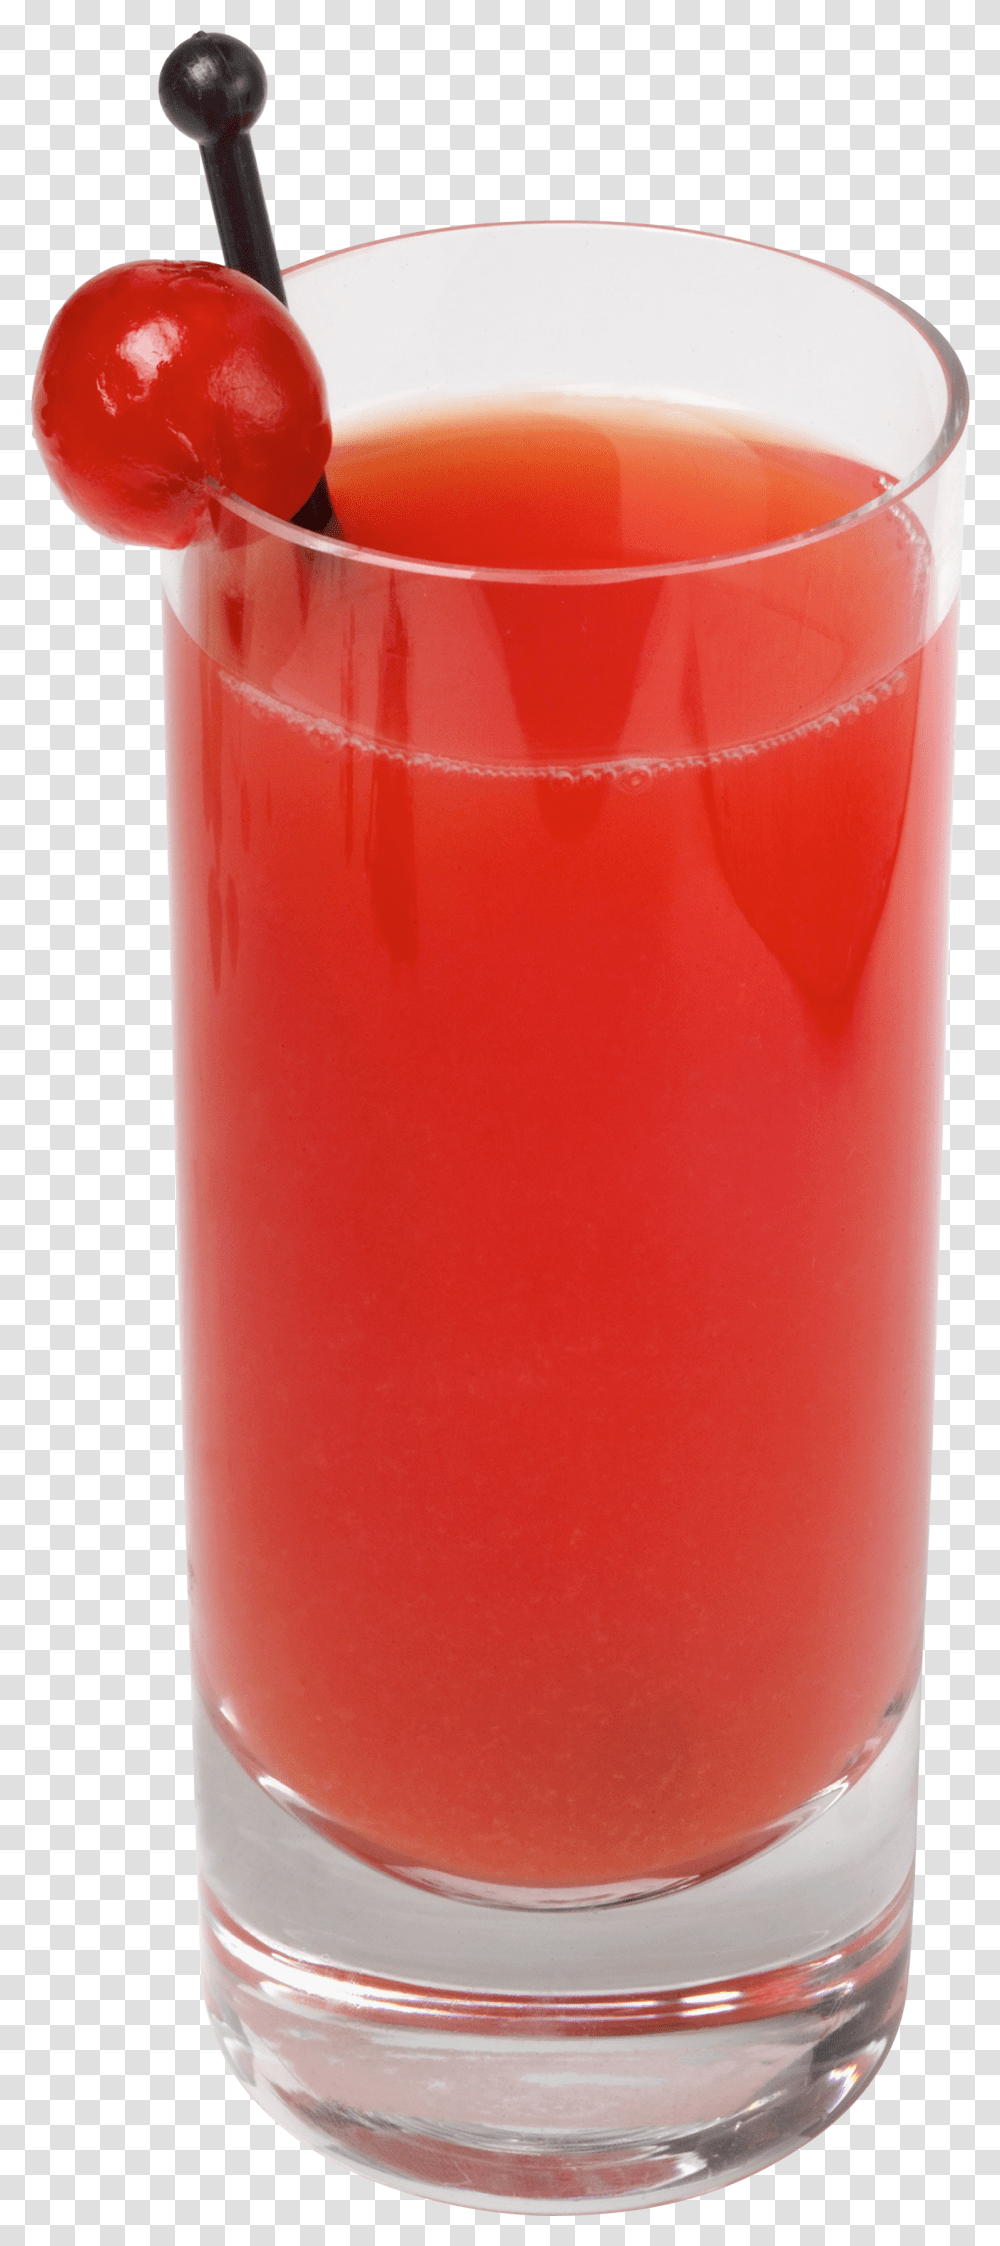 Juice, Fruit, Ketchup, Food, Bottle Transparent Png